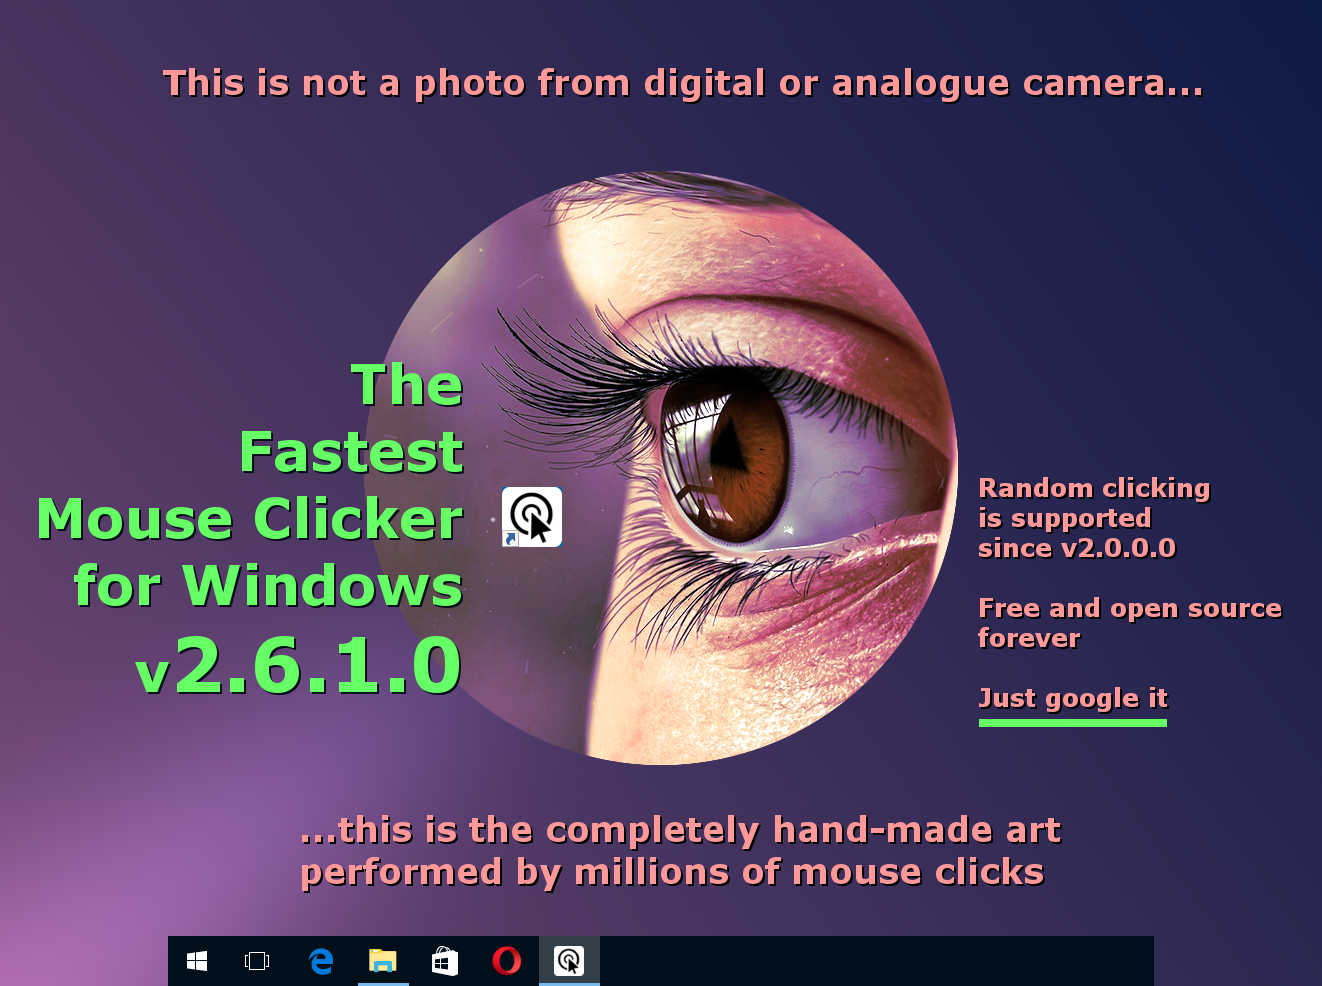 El Clicker de Ratón Más Rápido para Windows versión 2.6.1.0: arte completamente hecho a mano por la aplicación clicker